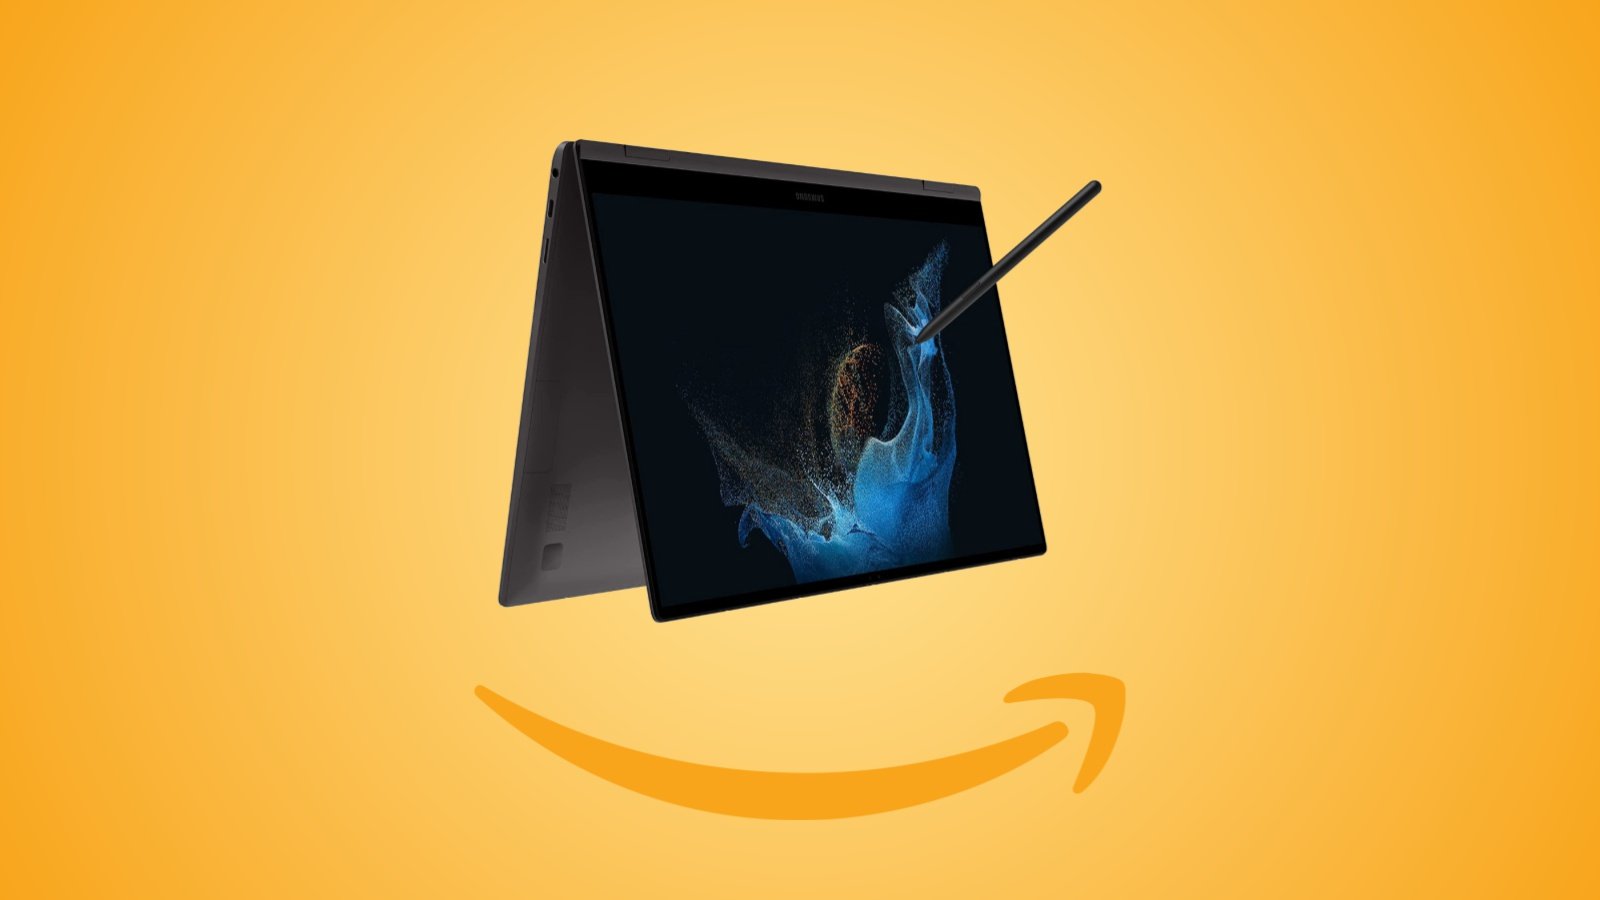 Offerte Amazon: PC portatile convertibile Samsung Galaxy Book2 Pro 360 al prezzo minimo storico